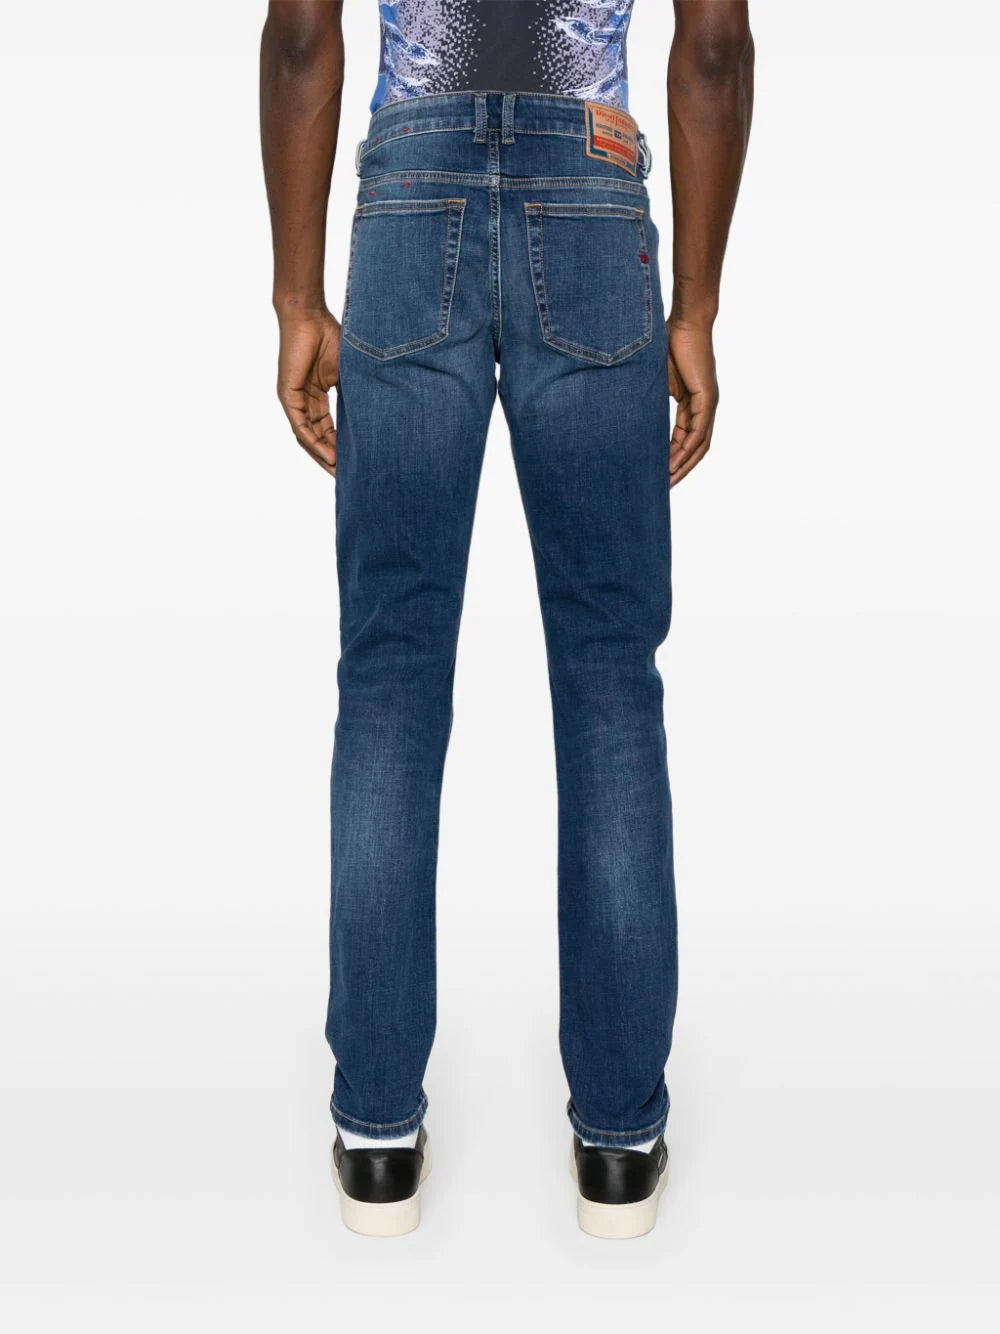 1979 Sleenker skinny jeans